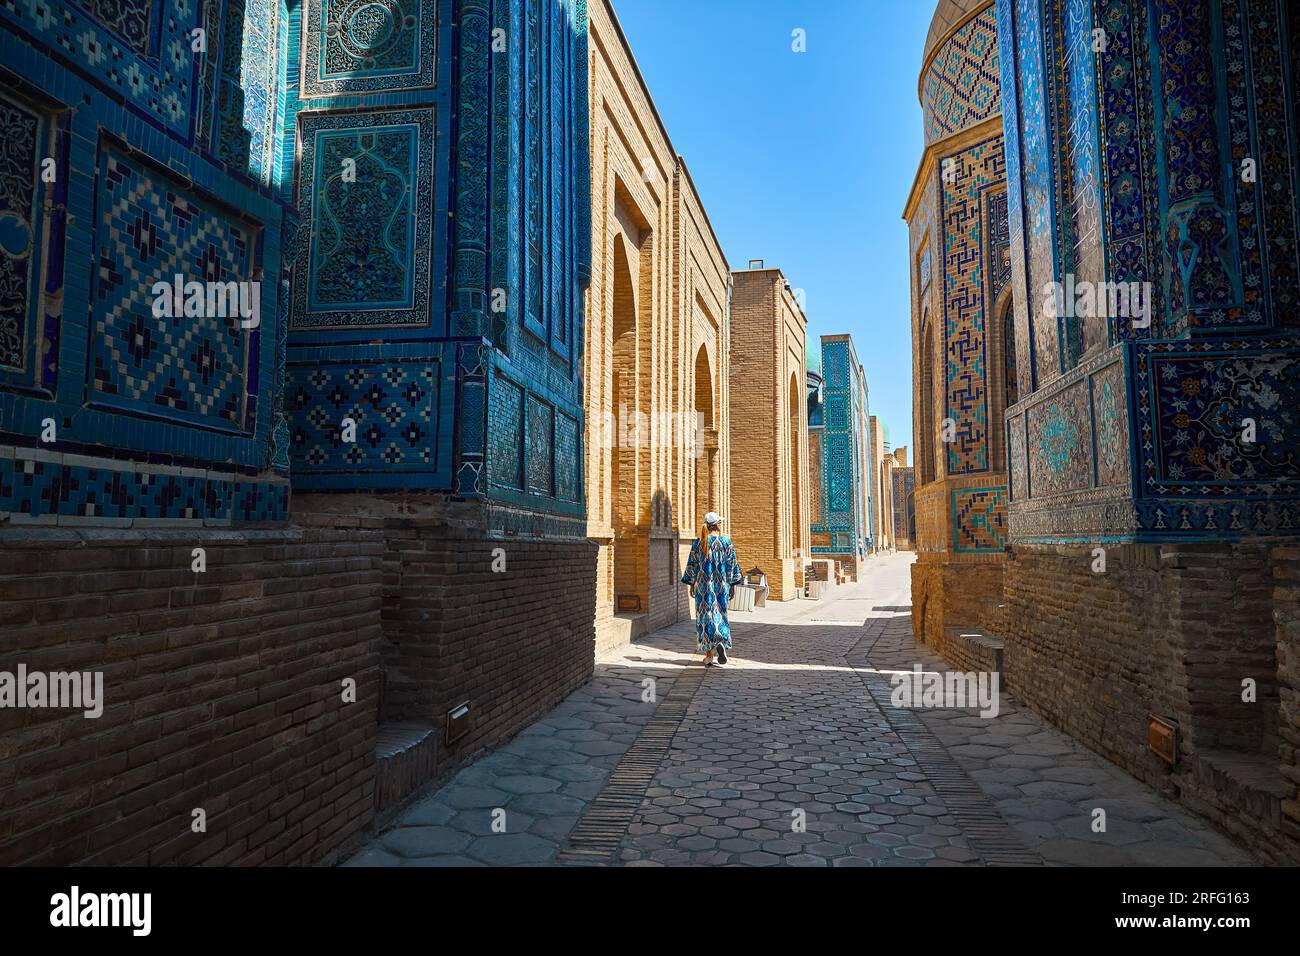 Femme touristique marchant dans le beau cimetière historique de Shahi Zinda porte d'entrée avec finement décoré par mausolées en mosaïque de pierre bleue et turquoise i Banque D'Images